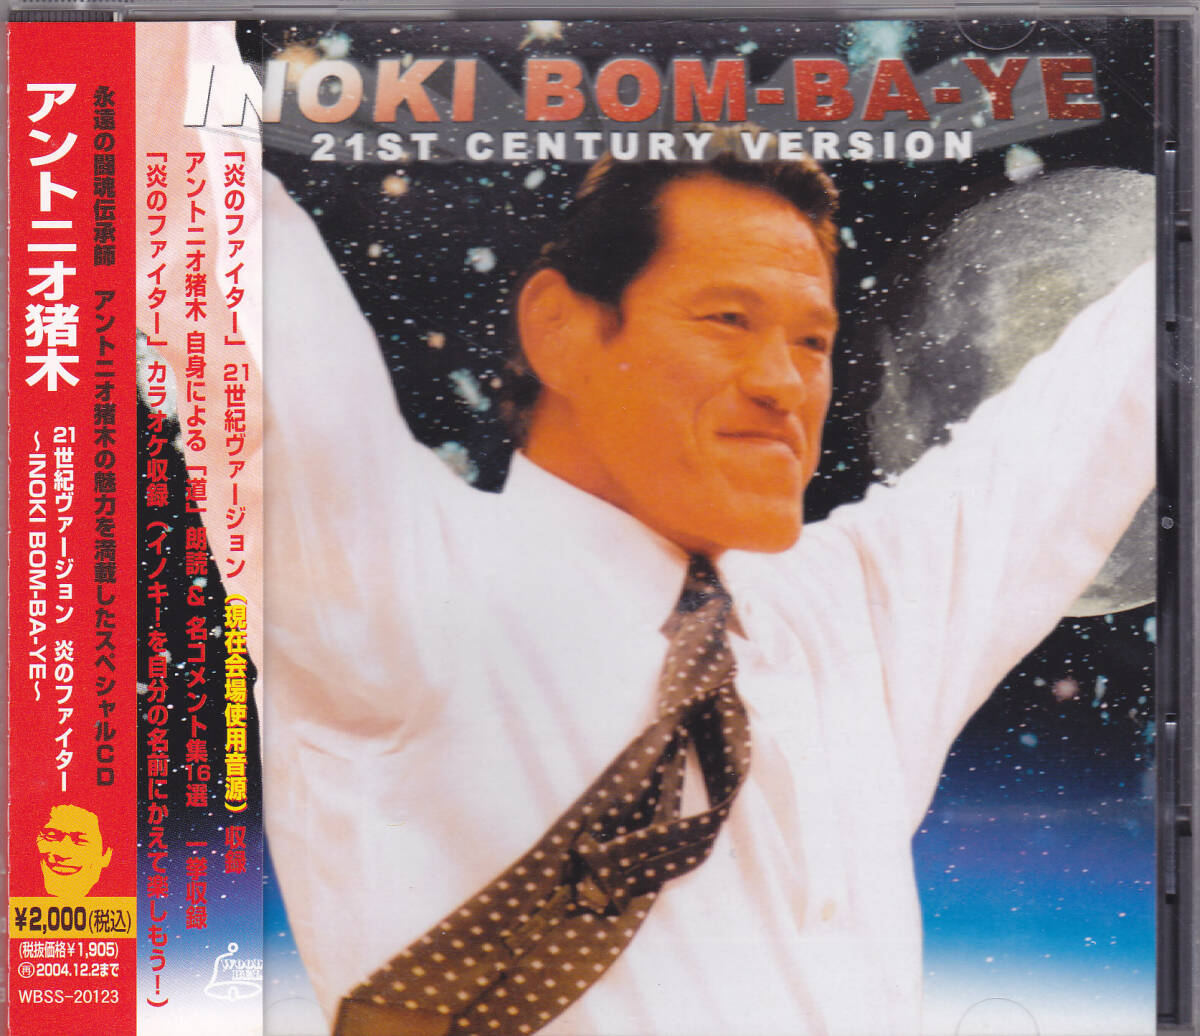 CD アントニオ猪木 21世紀ヴァージョン 炎のファイター INOKI BOM-BA-YE WBSS-20123 帯付き 新日本プロレスの画像1